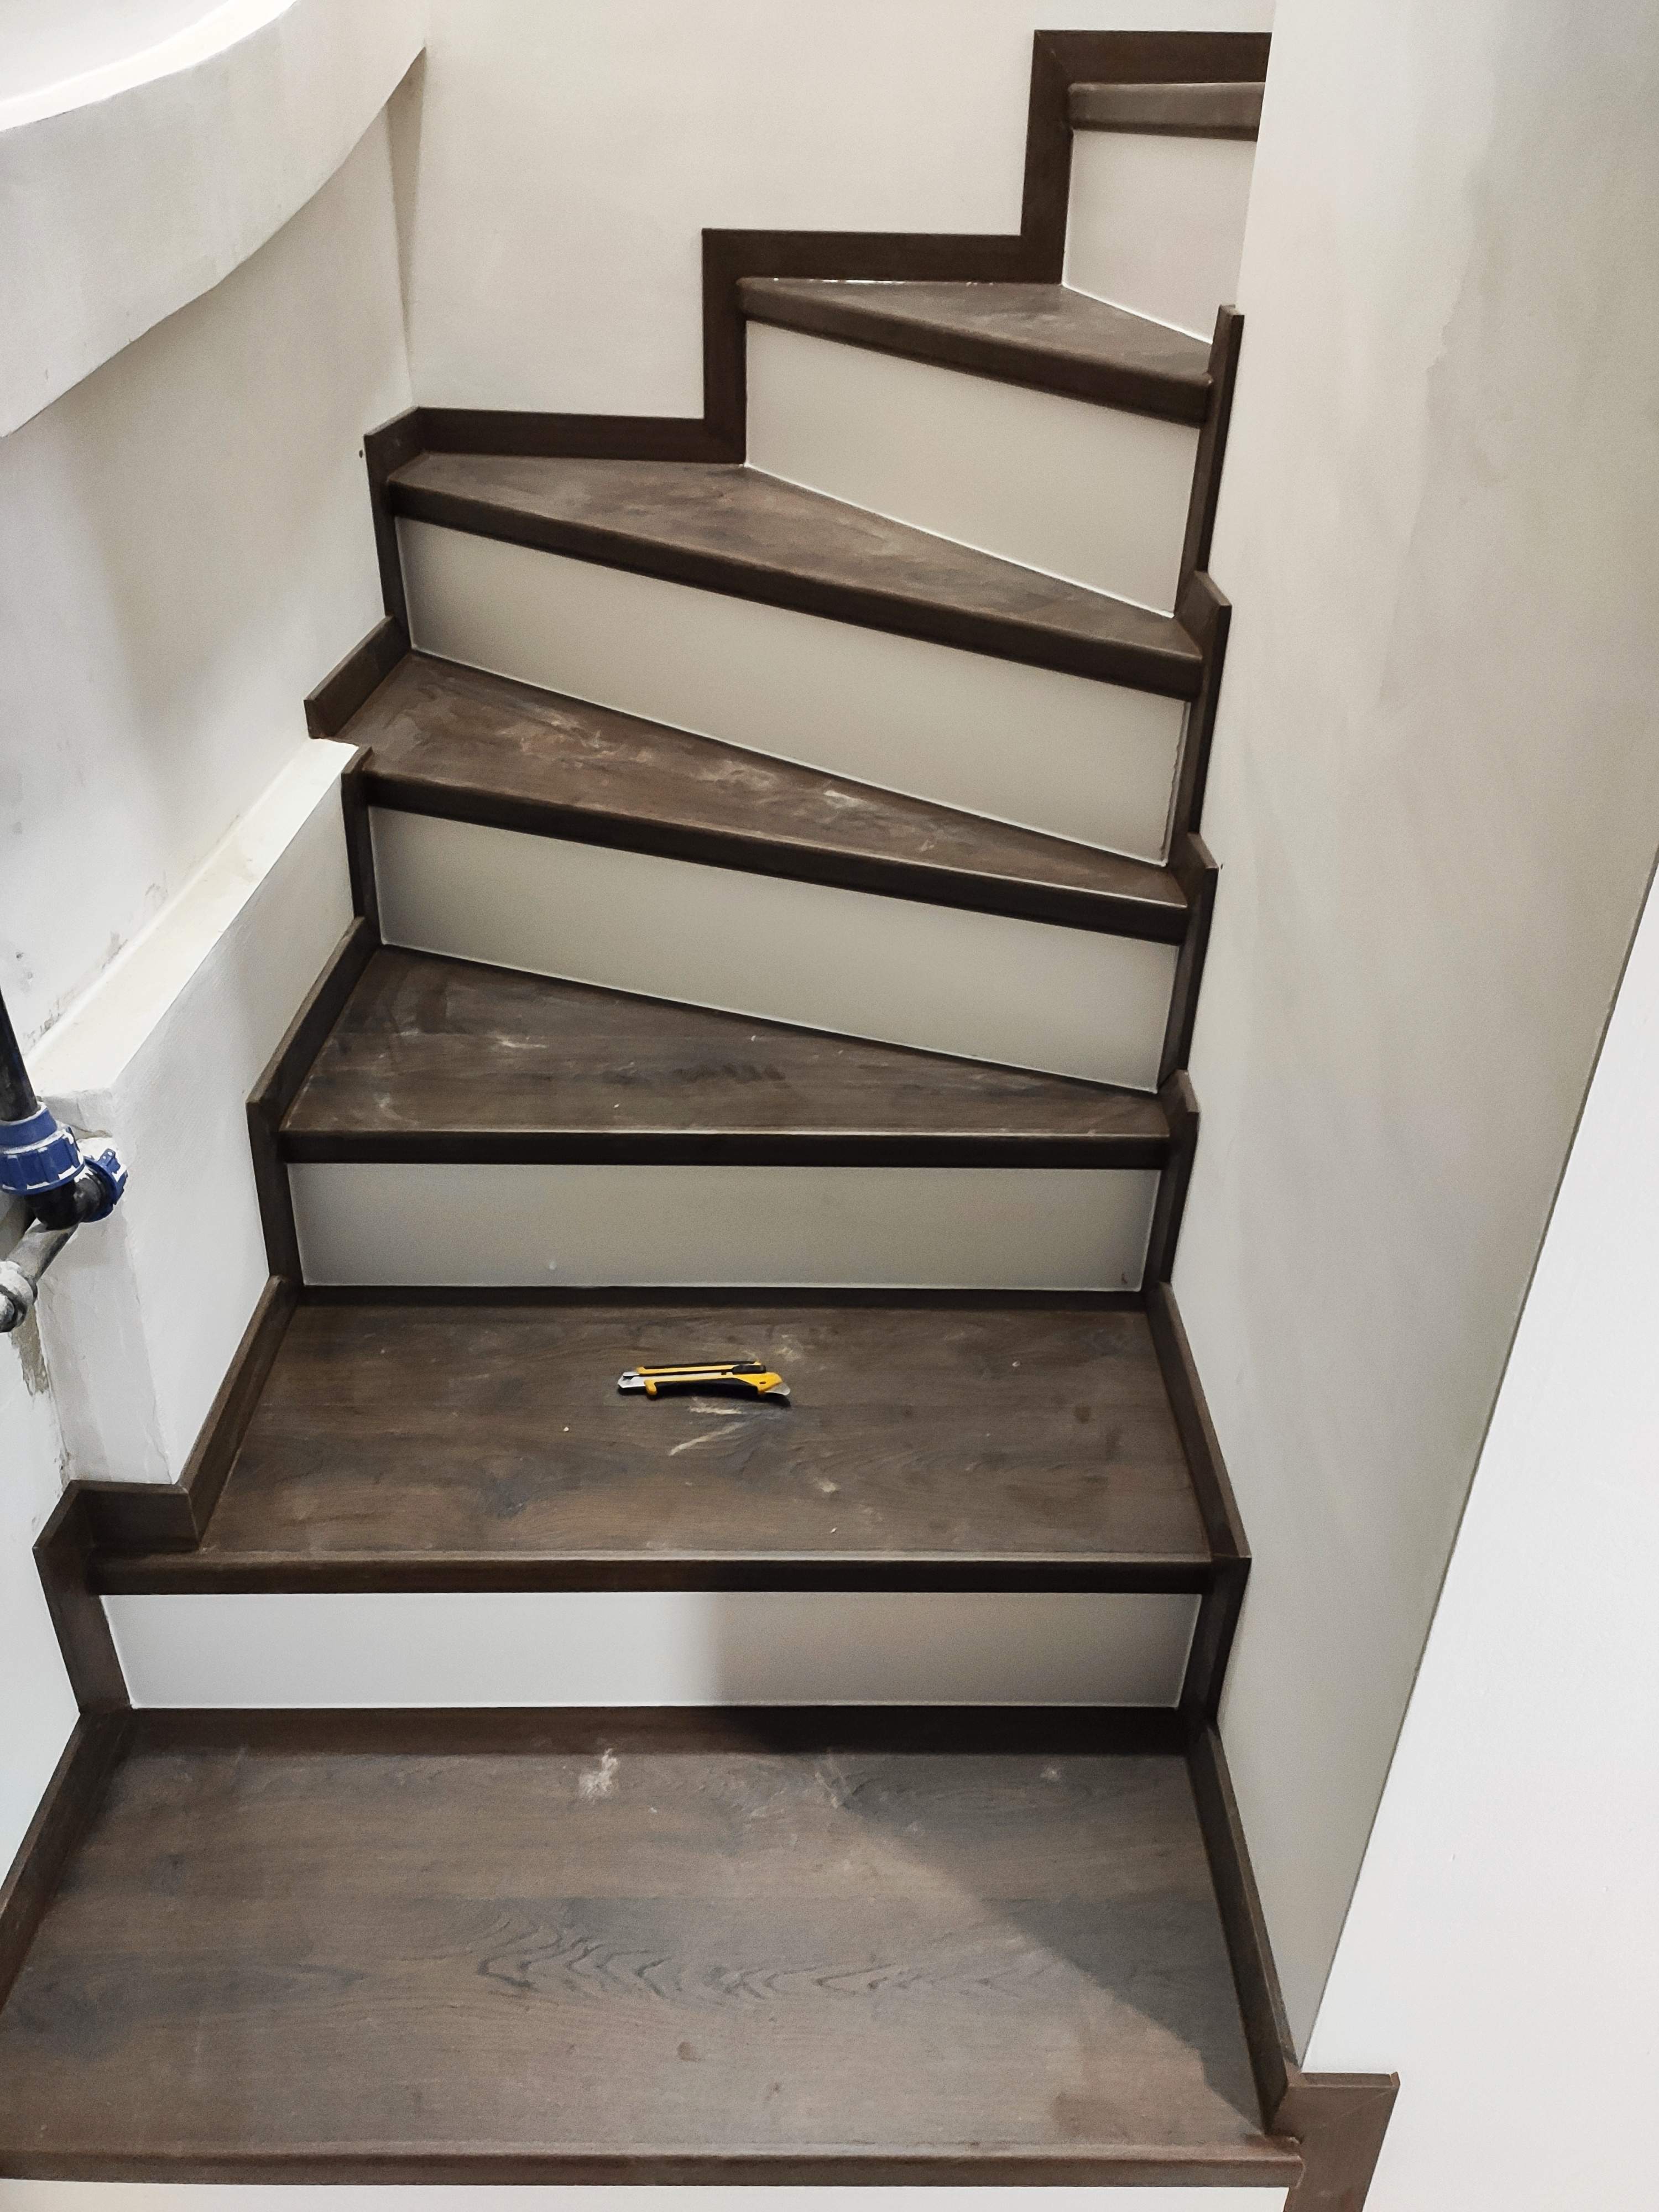 Oldalt nyitott gipszbeton lépcső, Quick Step laminált padlóburkolattal – újítsa fel otthonát a KT padló segítségével